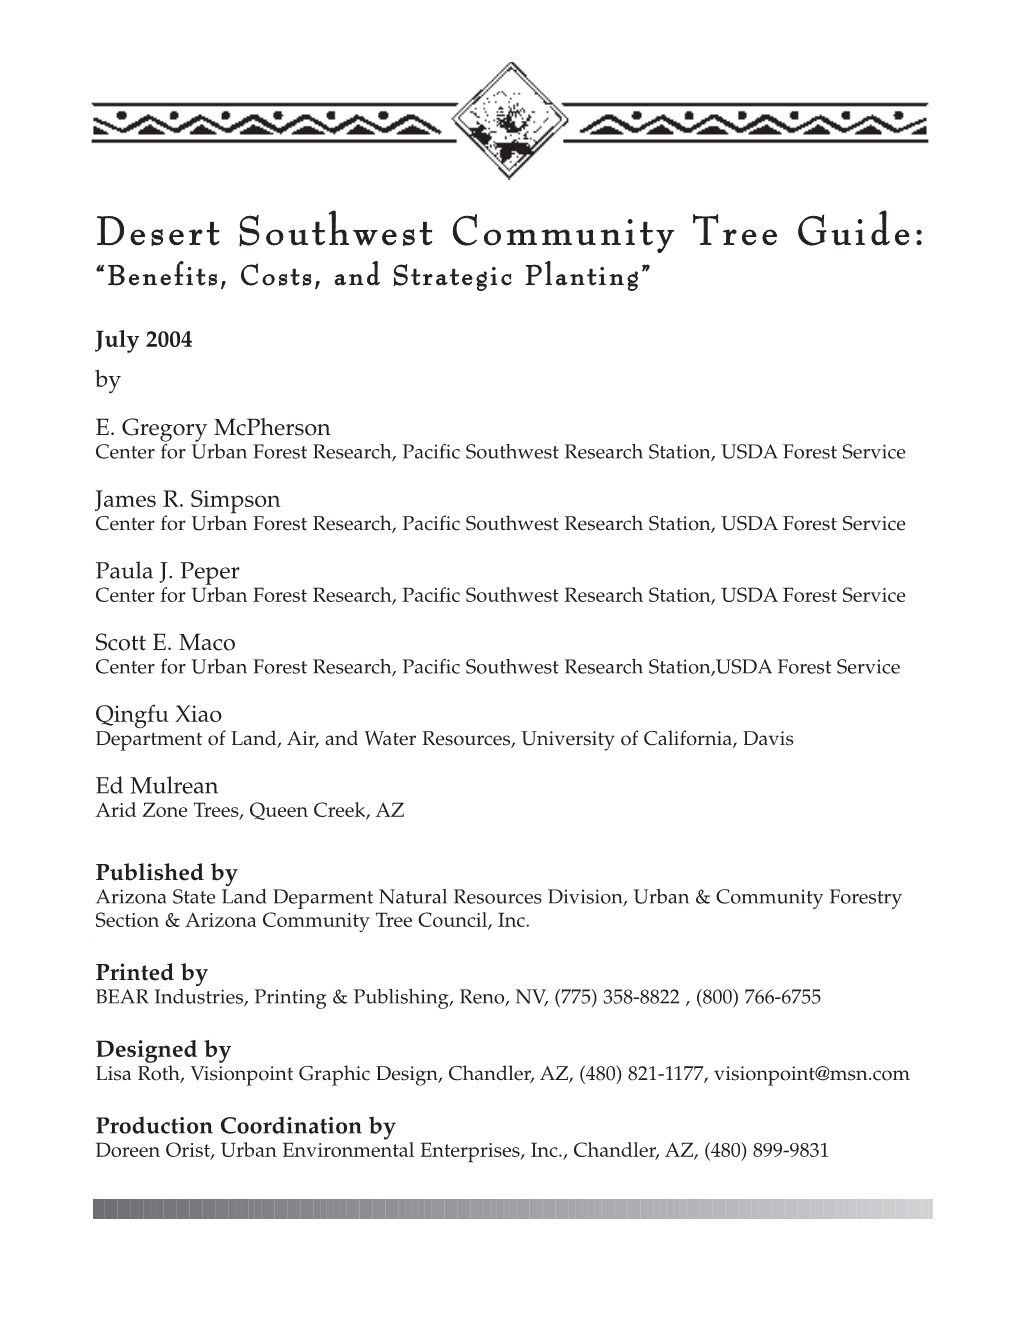 Desert SW Comm. Tree Guide 04